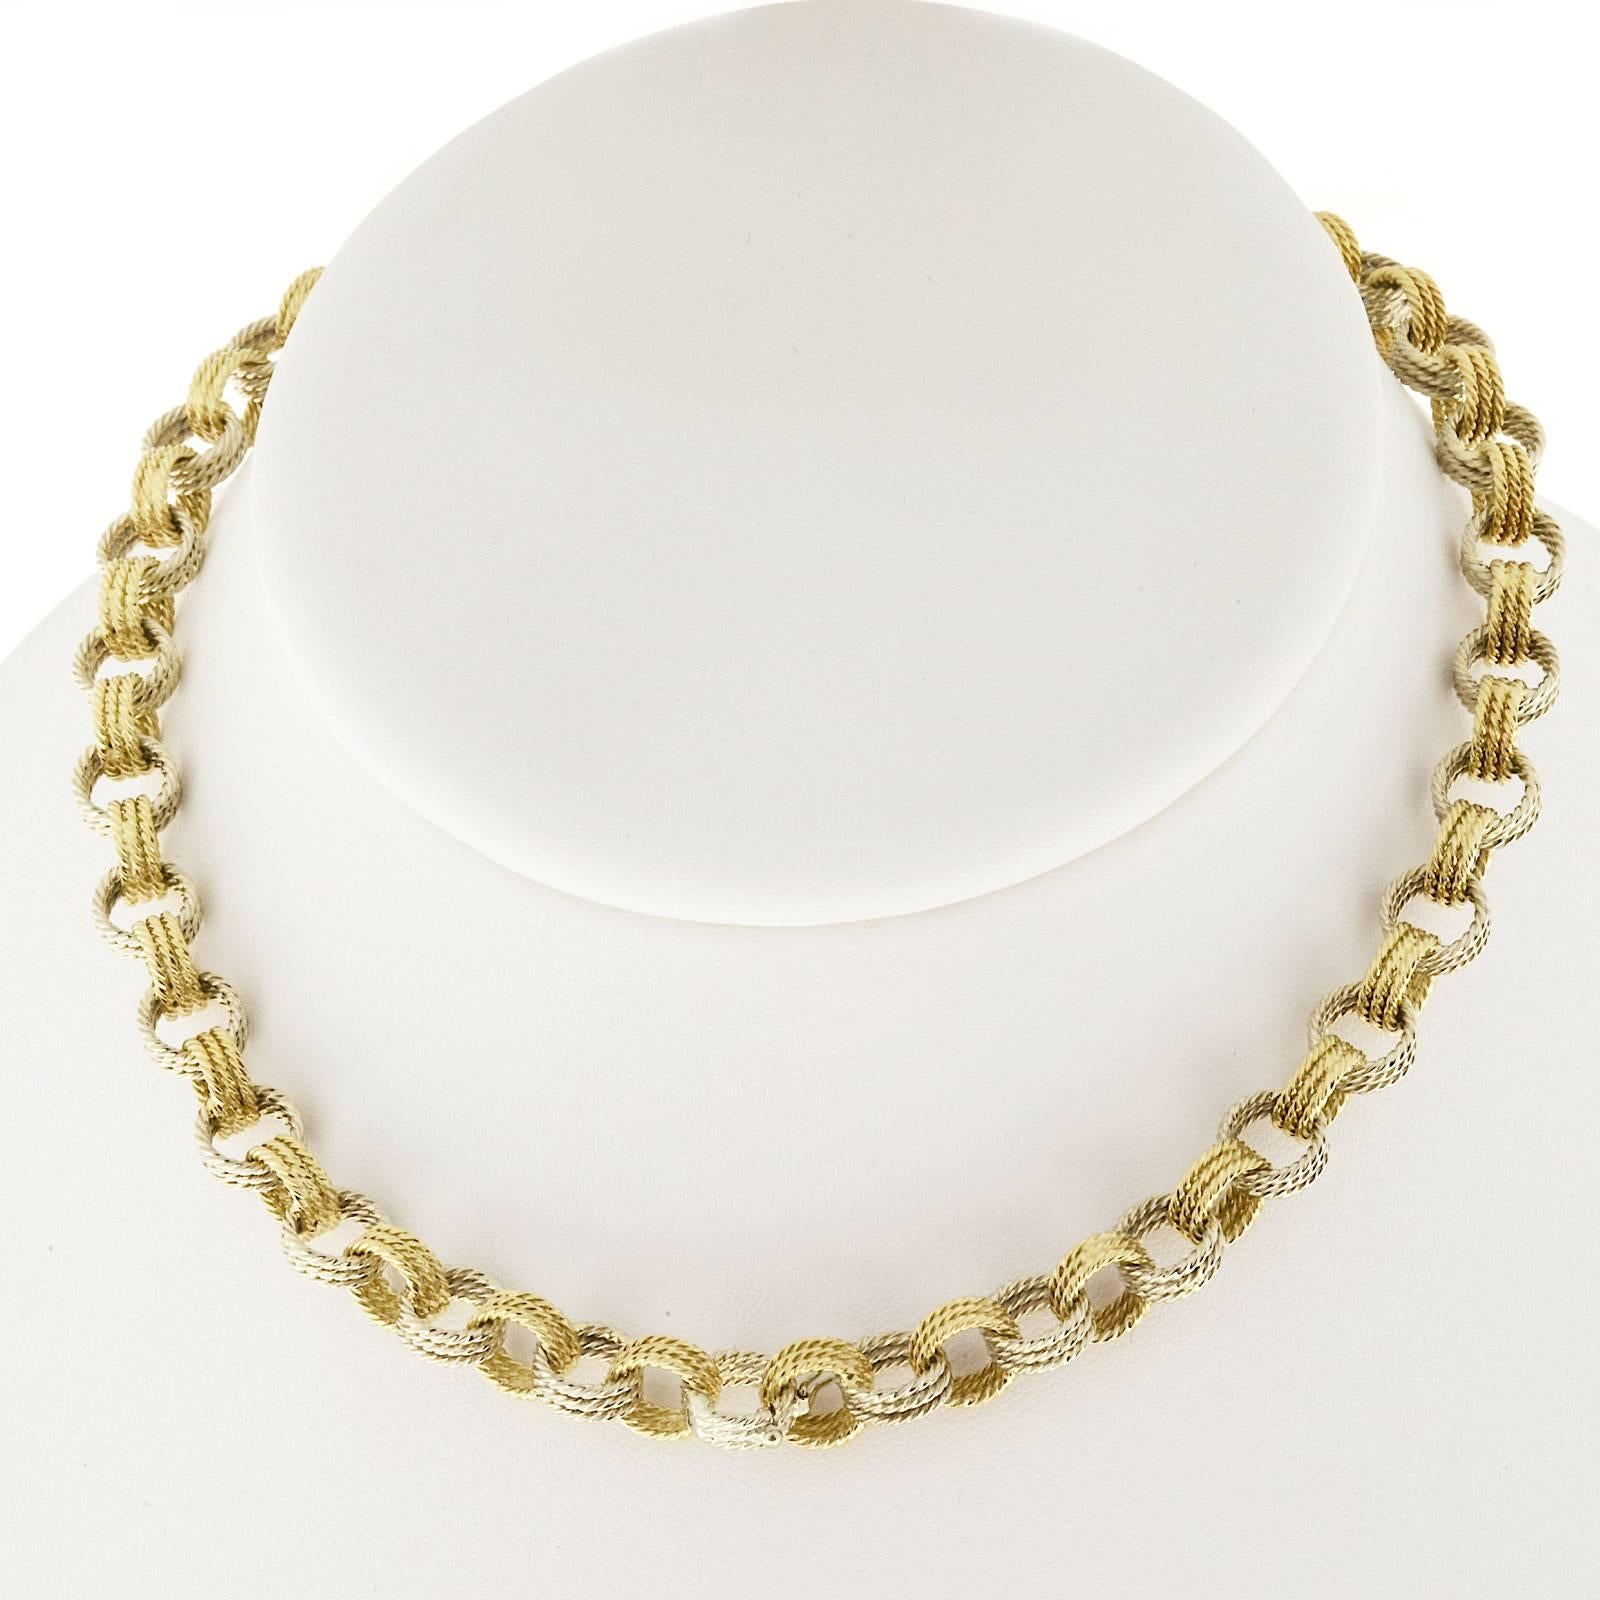 Handmade 2 Color Gold Wire Link Necklace Bracelet 2